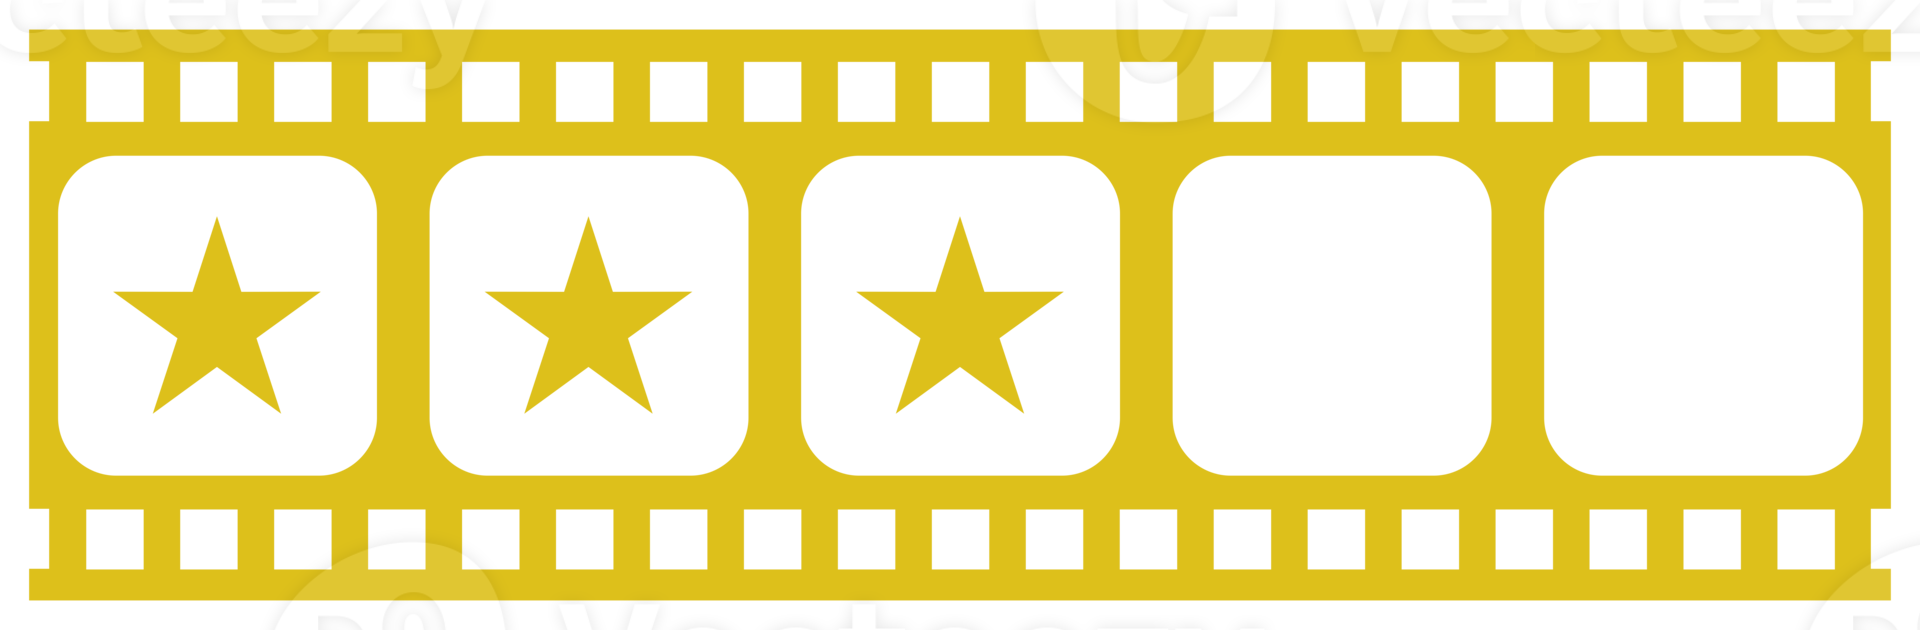 visual del signo de cinco estrellas en la silueta de la tira de película. símbolo de icono de clasificación de estrellas para reseñas de películas o películas, pictogramas, aplicaciones, sitios web o elementos de diseño gráfico. calificación 3 estrellas. formato png